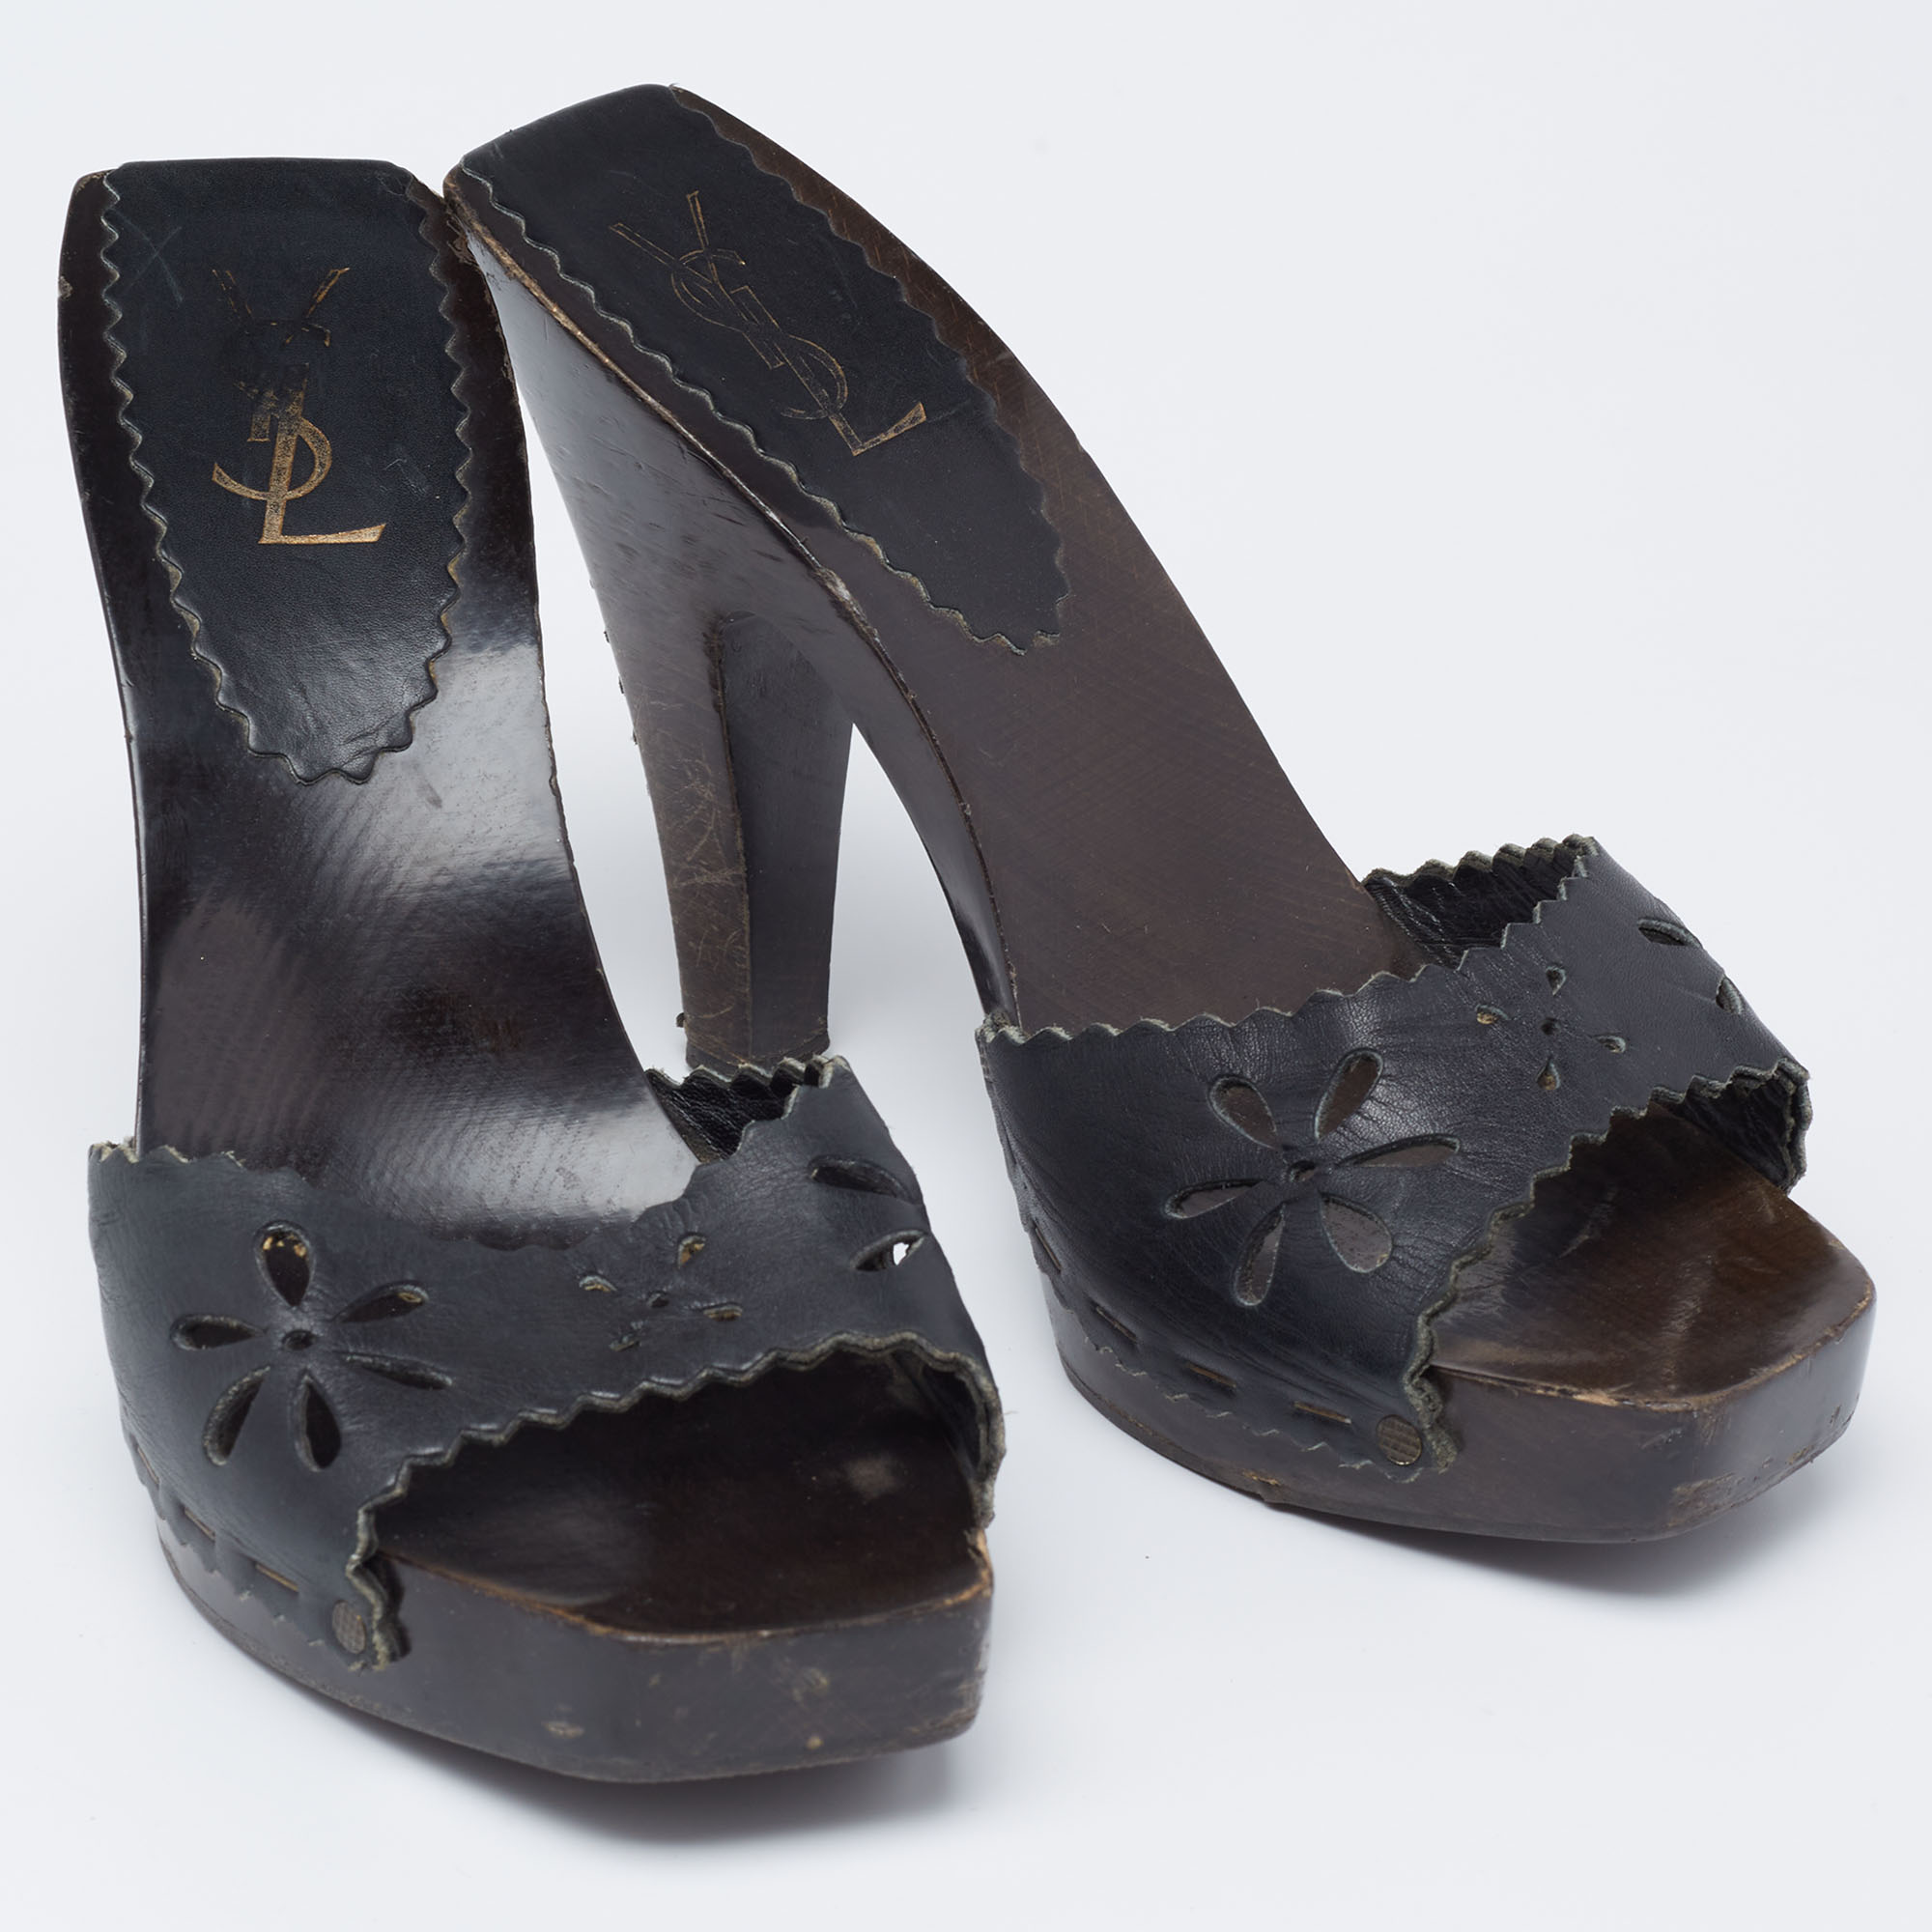 Yves Saint Laurent Black Cutout Leather  Slide Sandals Size 39